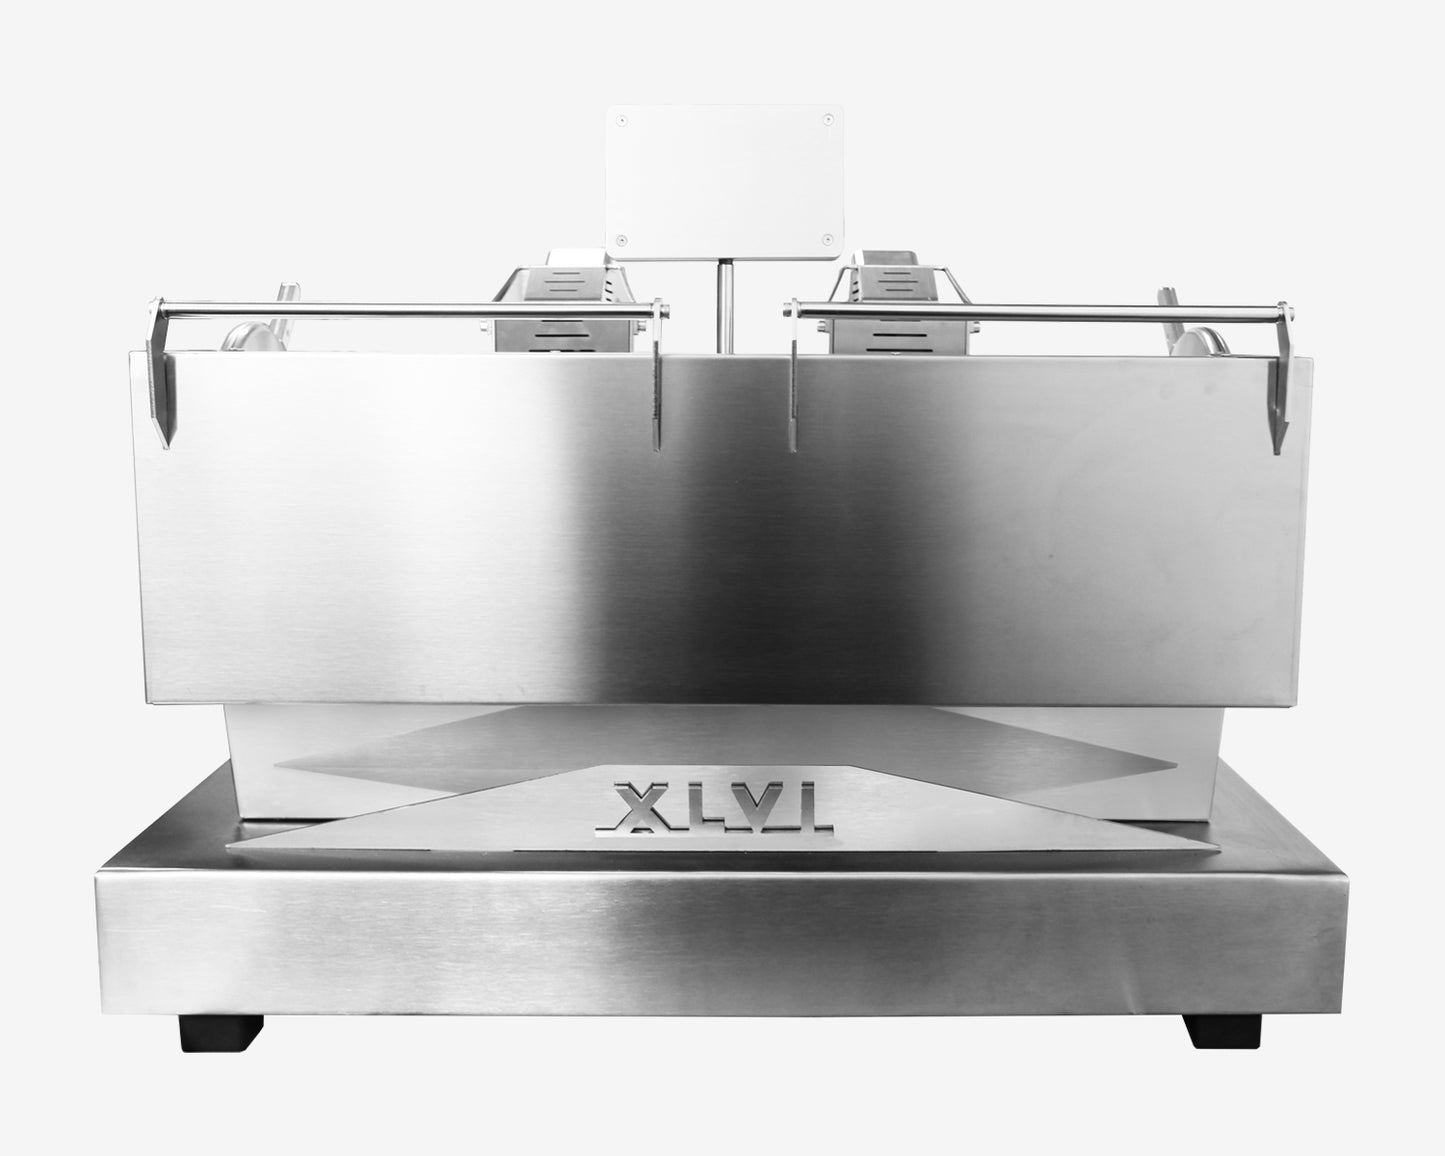 XLVI STH9 (Multiboiler)